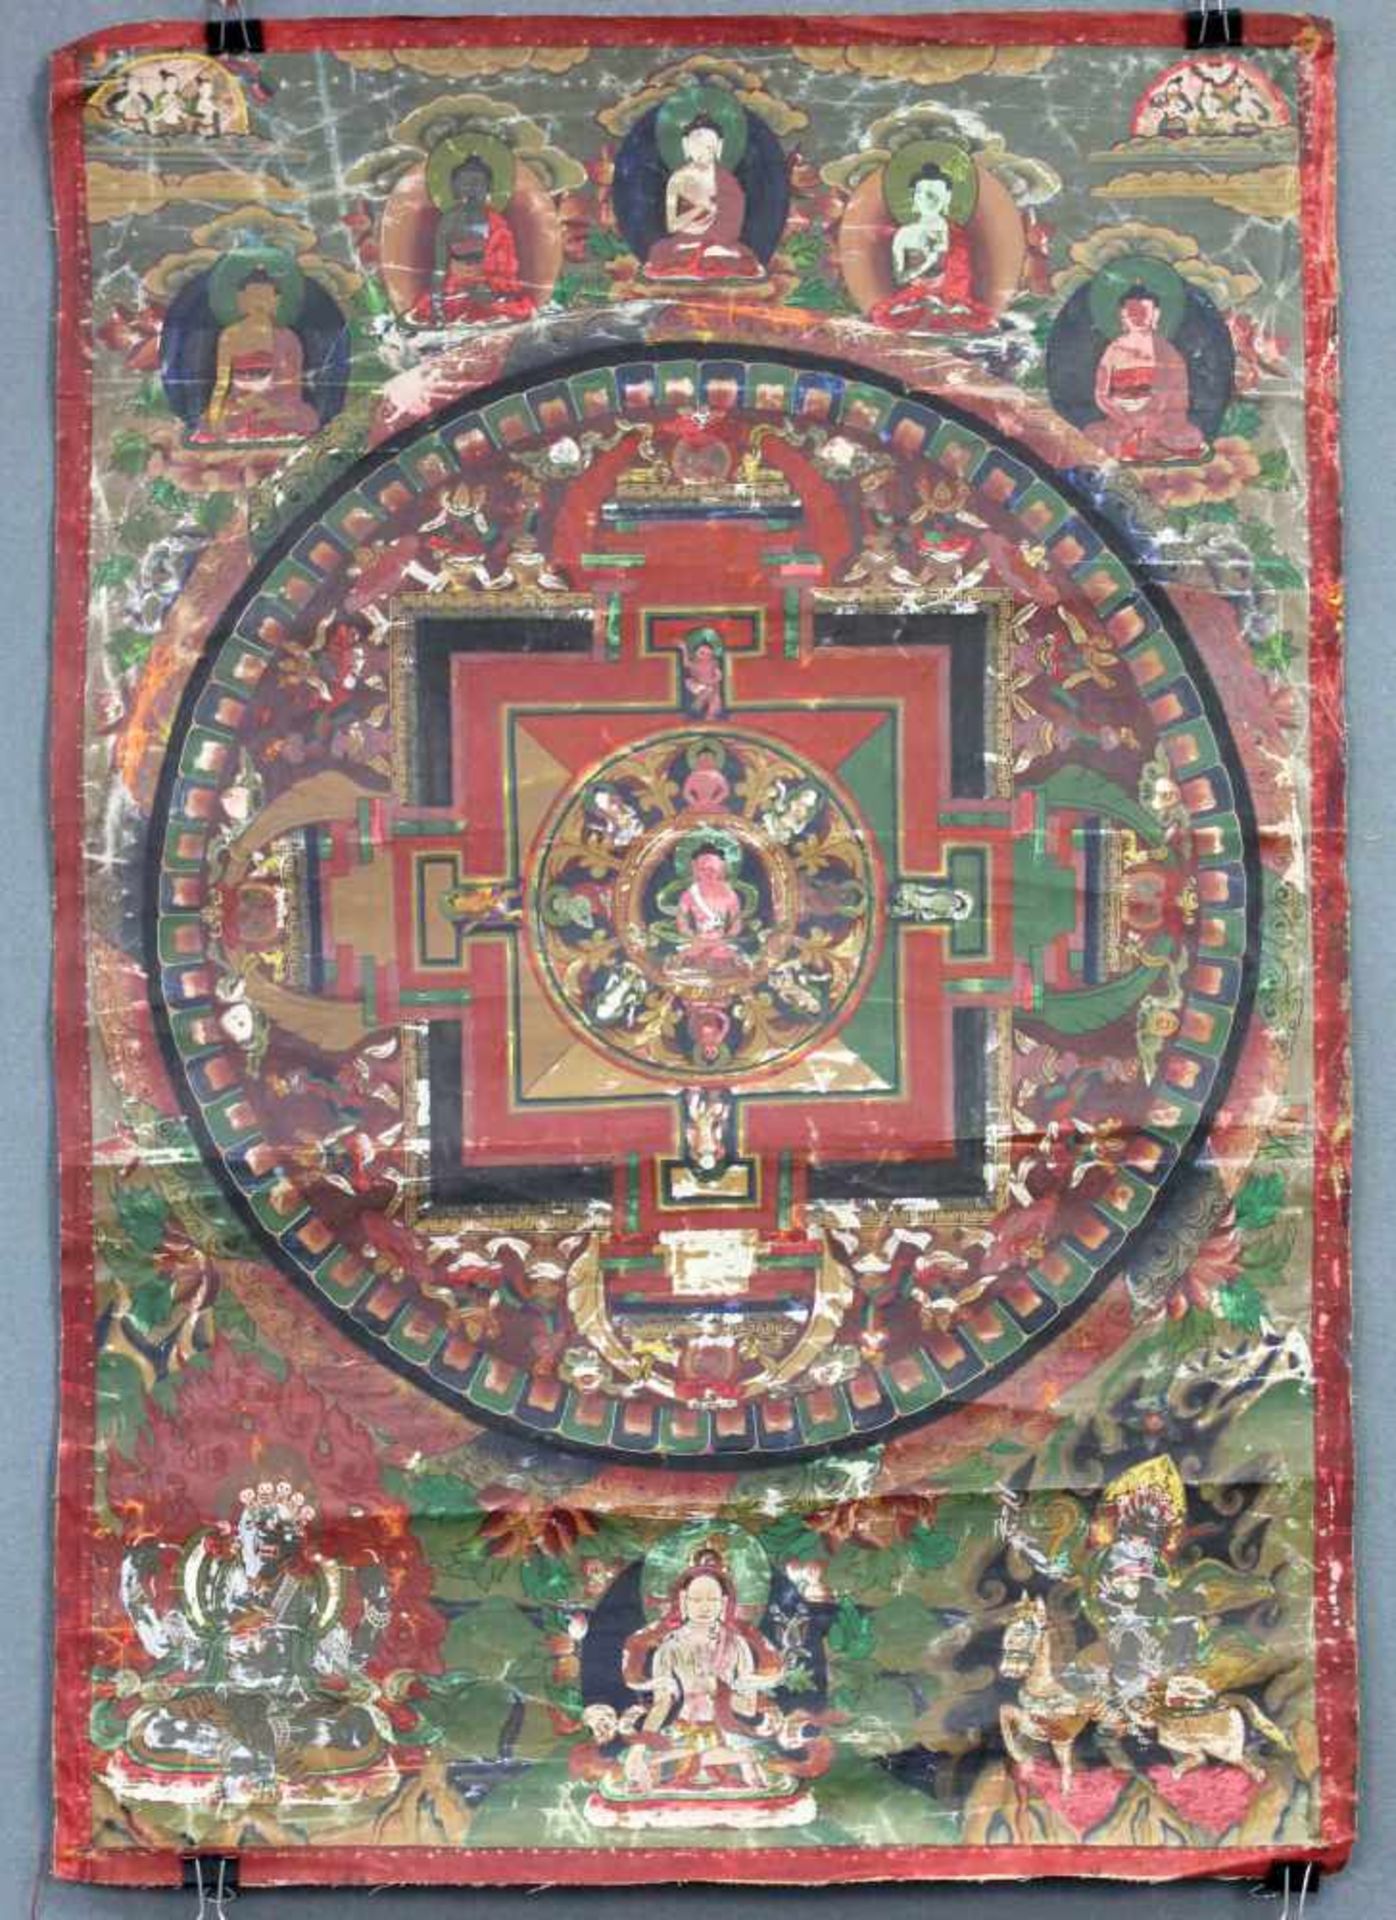 Meditation / Buddha Mandala, China / Tibet alt.64,5 cm x 44,5 cm. Gemälde.Grüner Äther mit